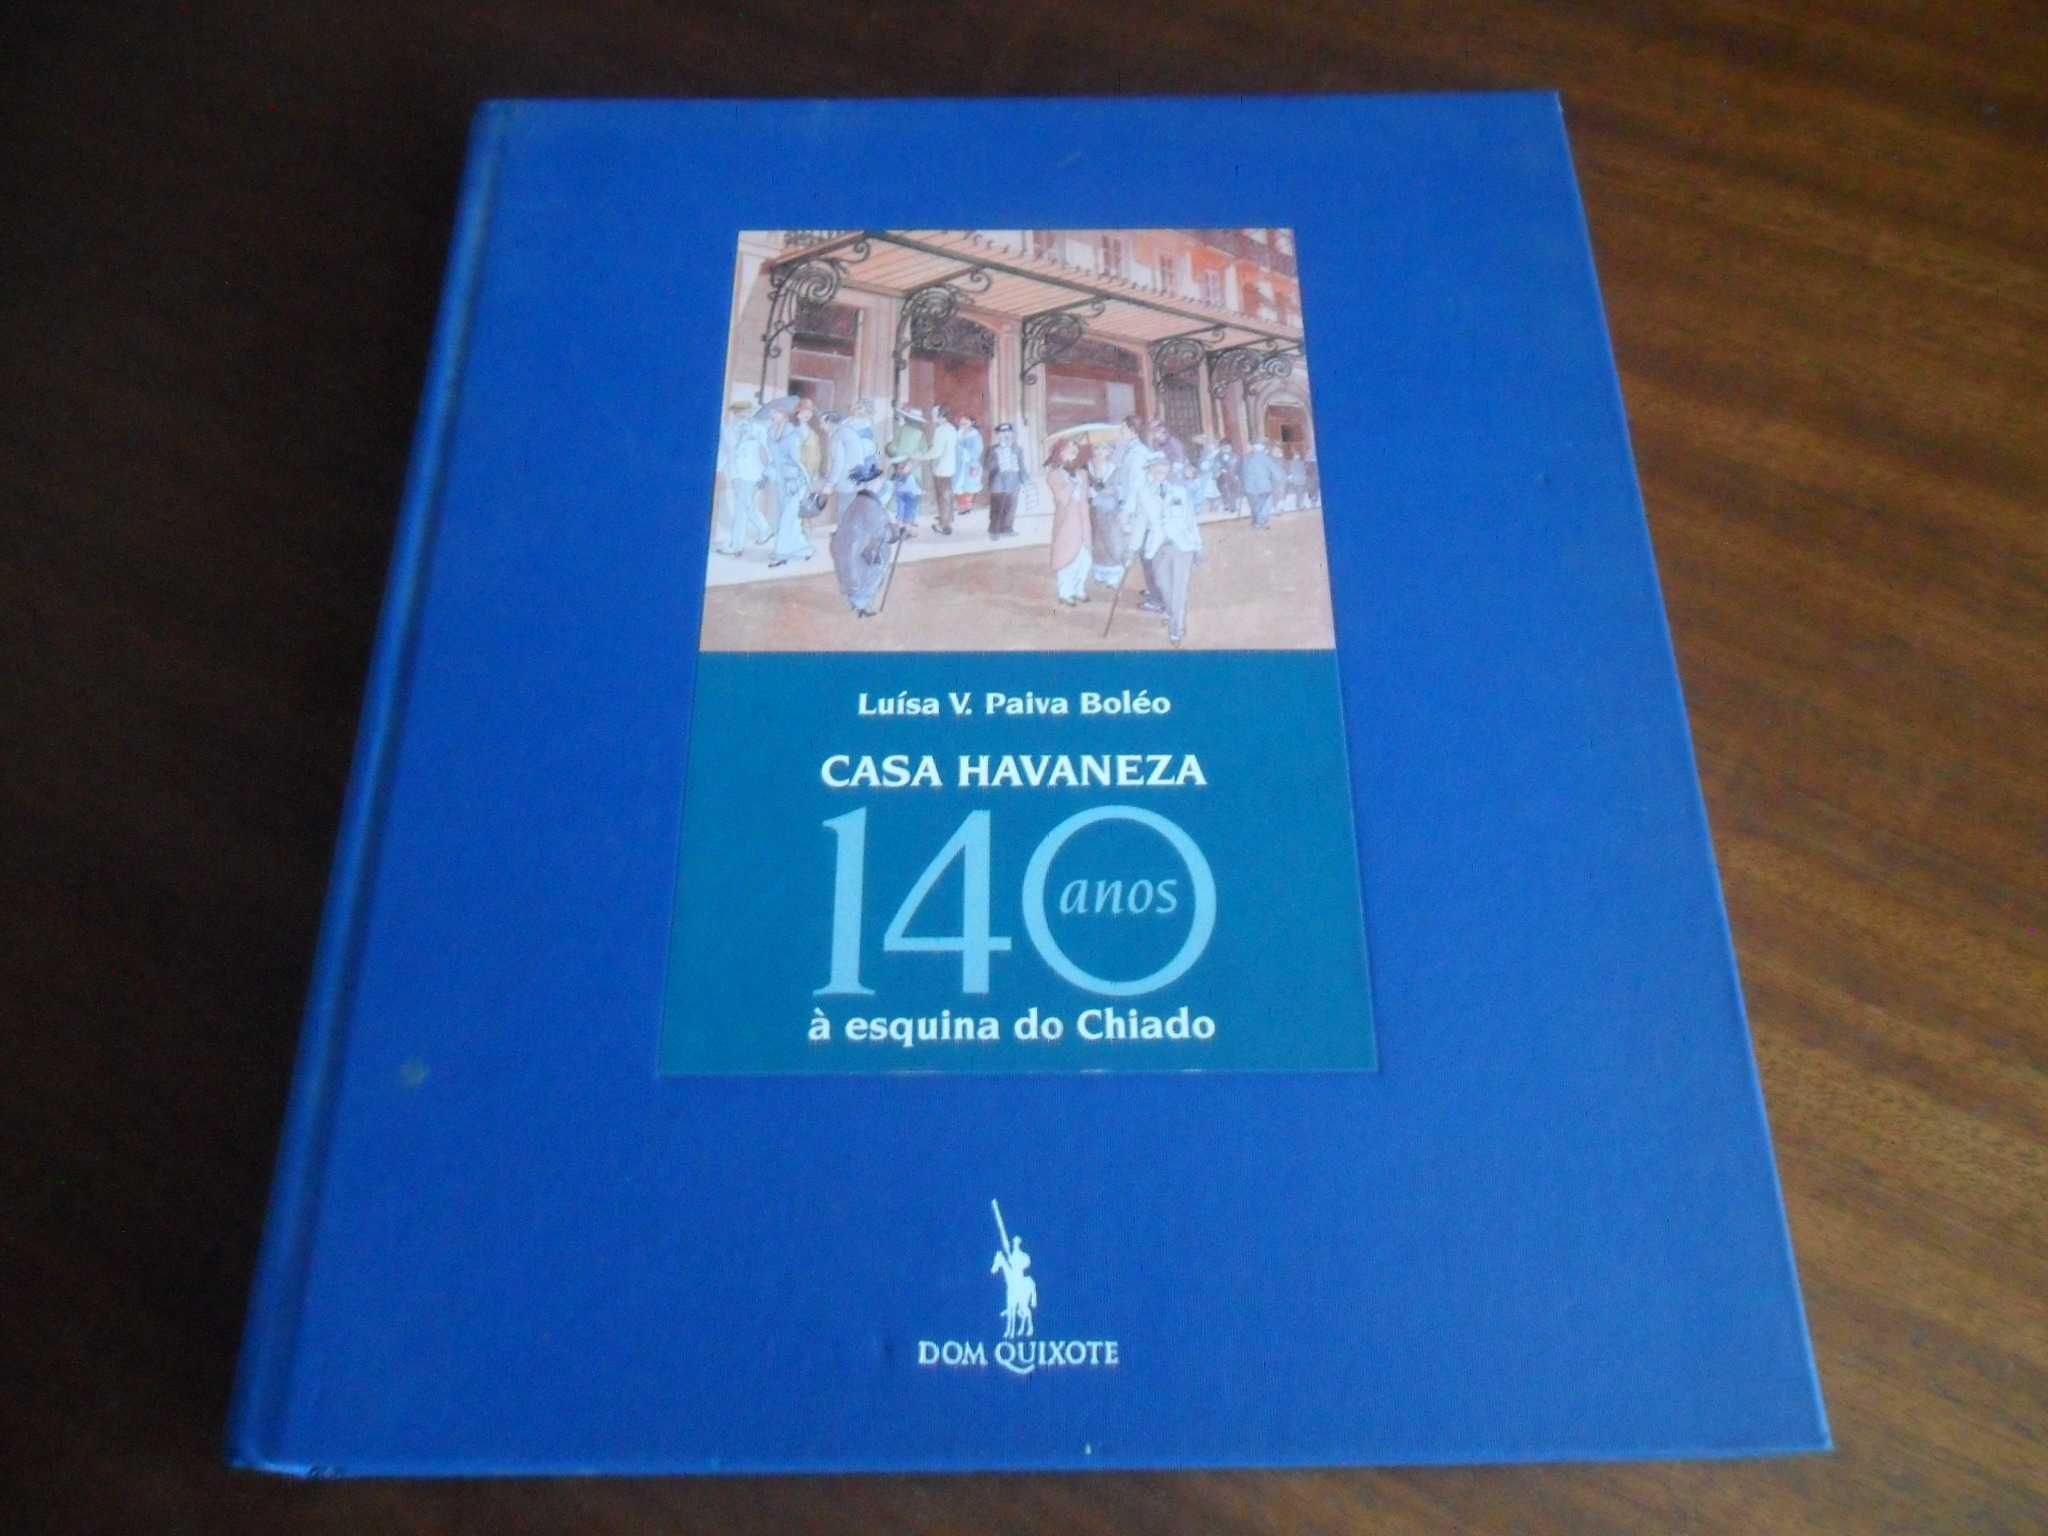 "Casa Havaneza" - 140 Anos À Esquina do Chiado de Luísa V. Paiva Boléo